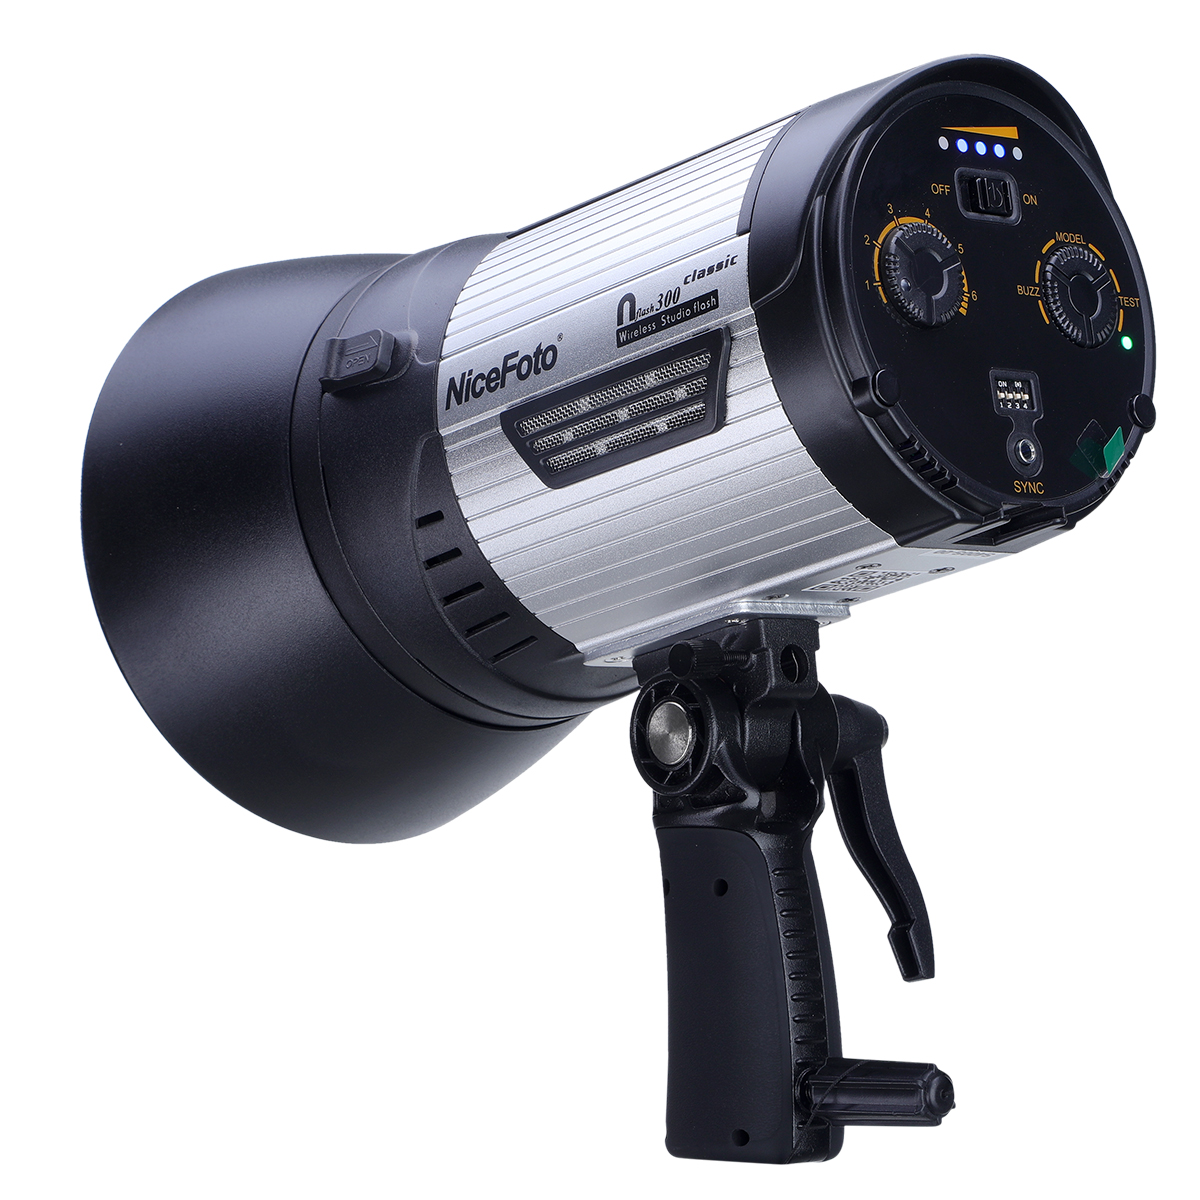 NiceFoto Nflash 300ws Đèn flash Studio thiết bị chụp ảnh cho ngoài trời Tính năng sản phẩm: